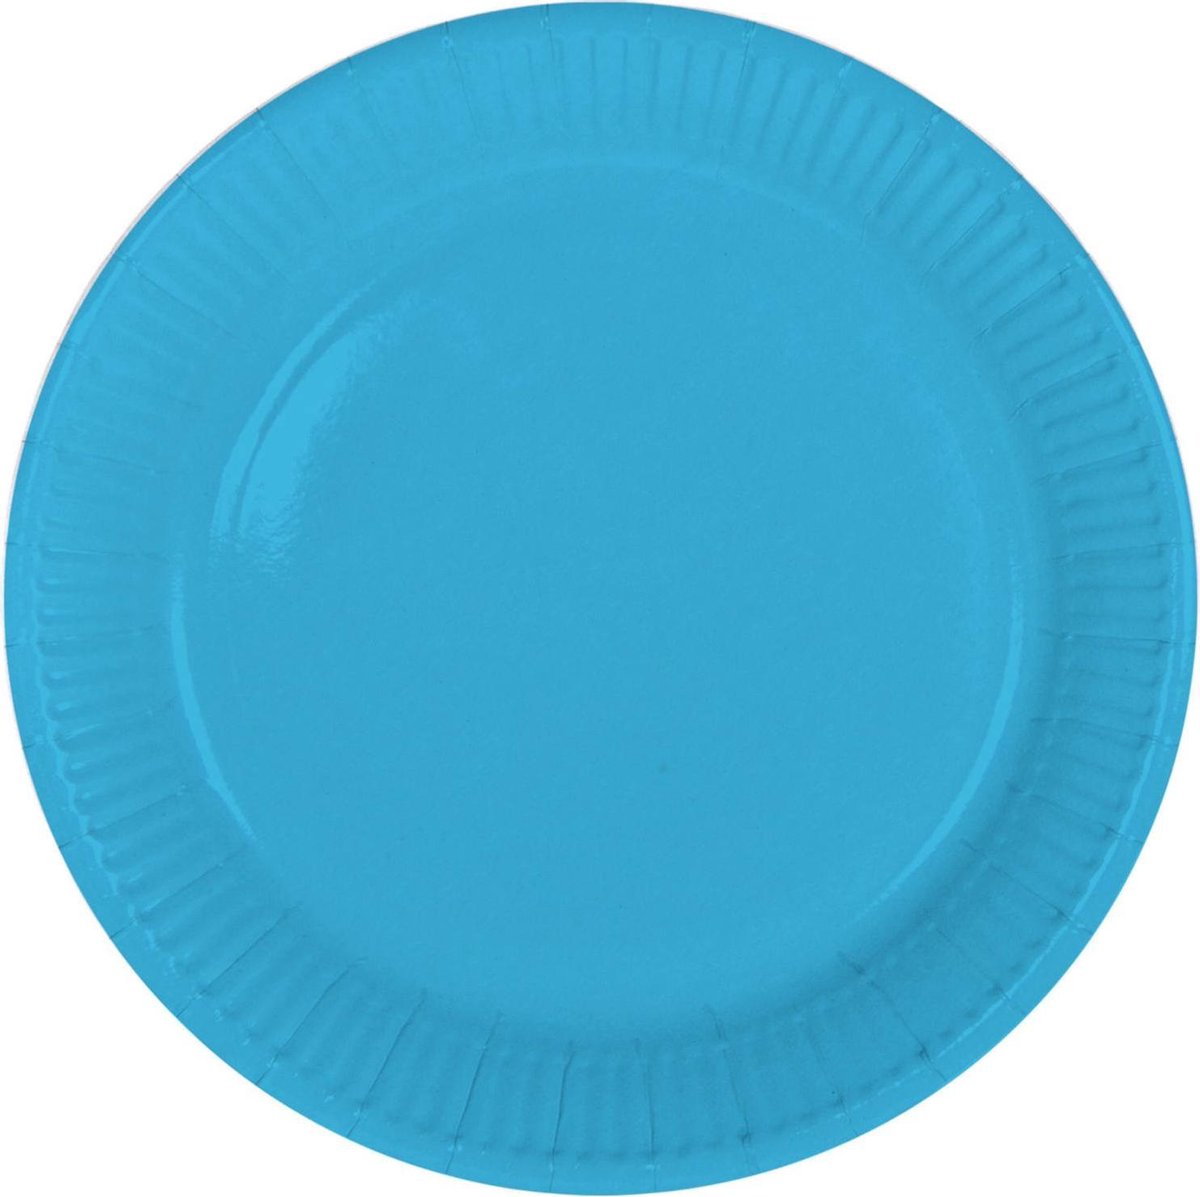 16x stuks party gebak/eet bordjes van papier blauw 23 cm - Uni kleuren thema voor verjaardag of feestje